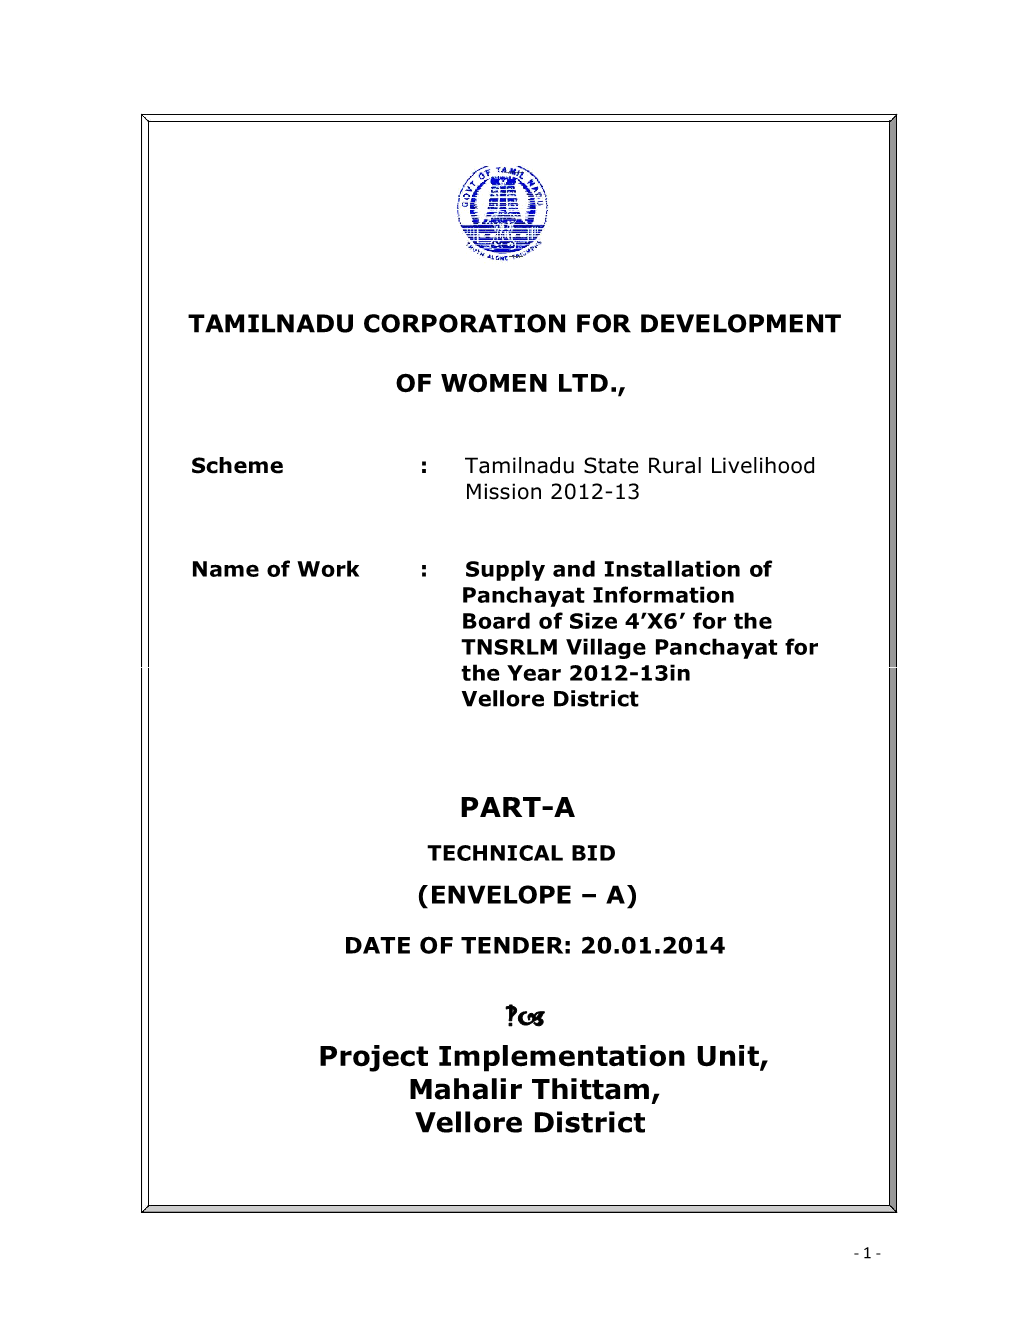 PART-A Project Implementation Unit, Mahalir Thittam, Vellore District